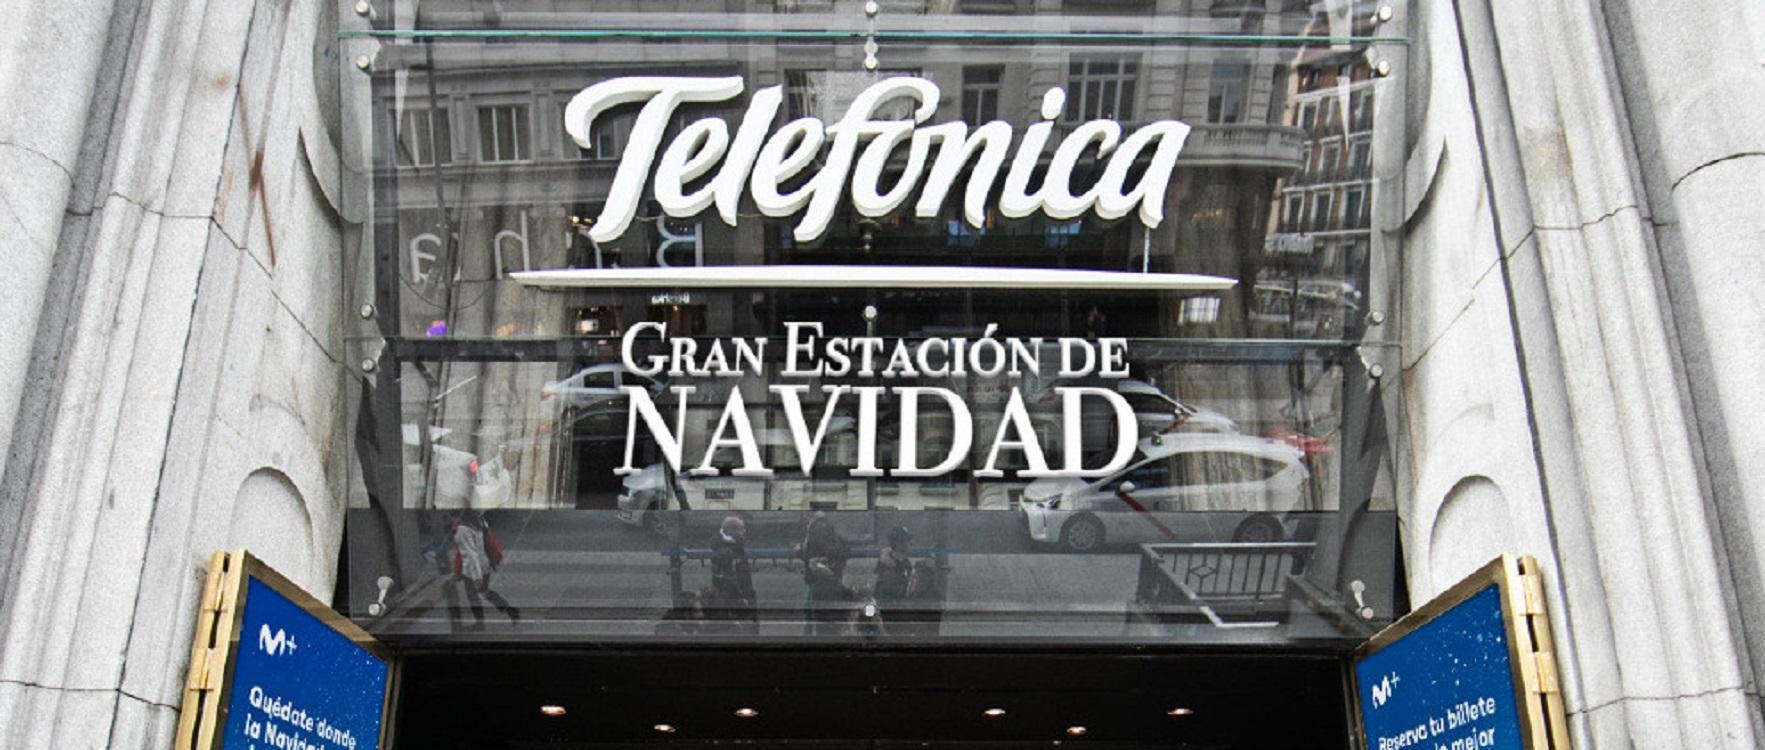 Gran Estación de Navidad de Telefónica, situado en la Gran Vía de Madrid